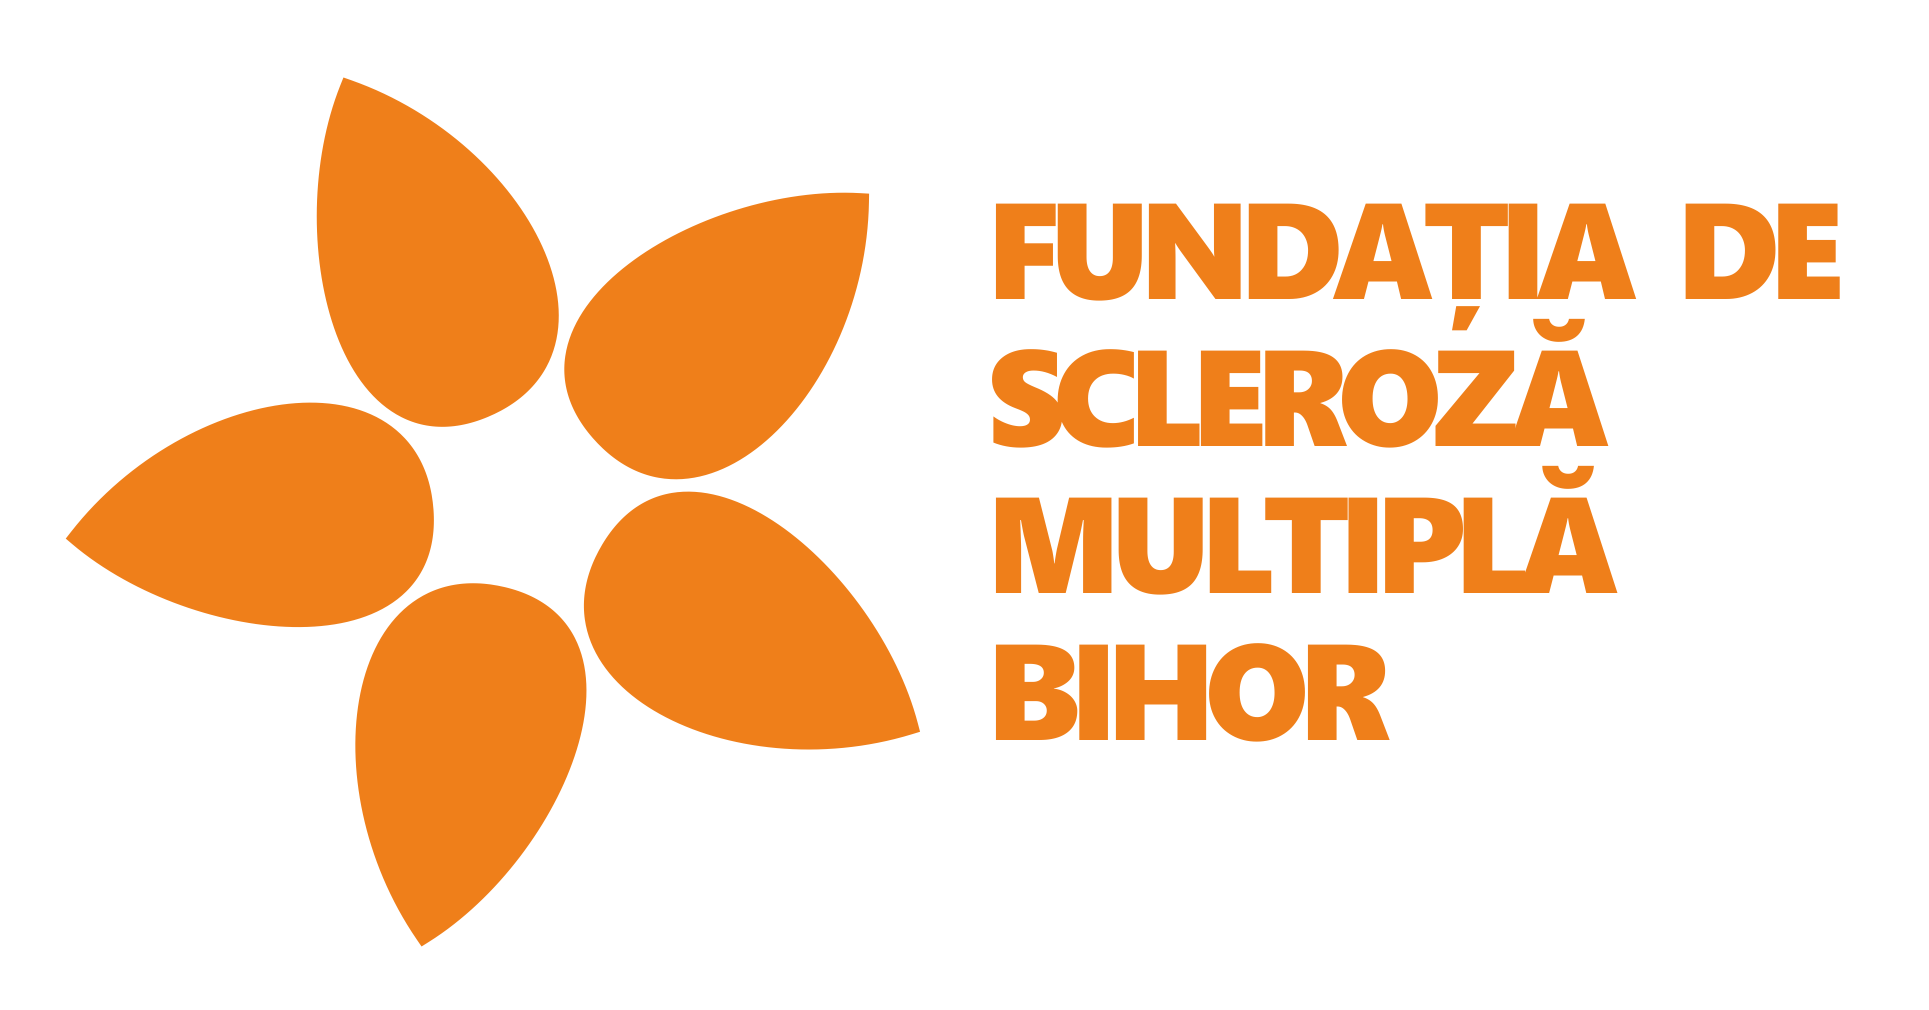 Fundația de Scleroză Multiplă Bihor logo